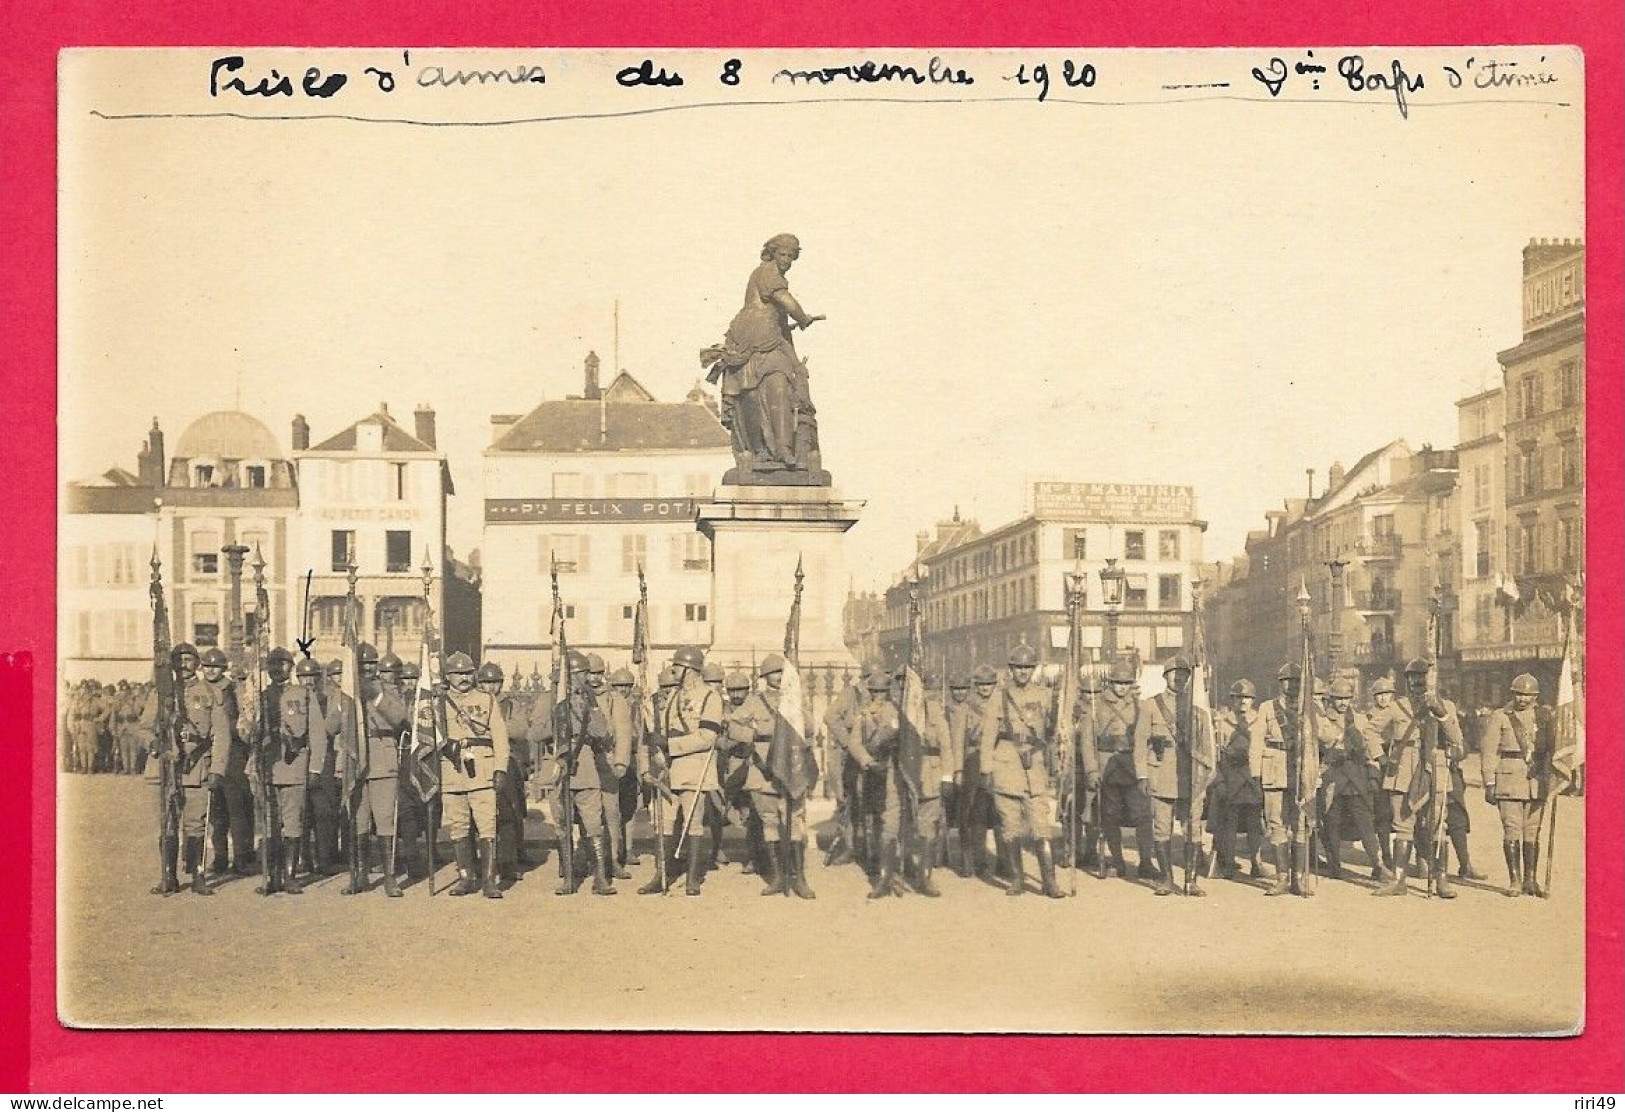 Cpa Beauvais, Prise D'armes 8 Novembre 1920 2 Corps D'Armée, Voir Scannes, 51 RI 2me Compagnie - Regiments